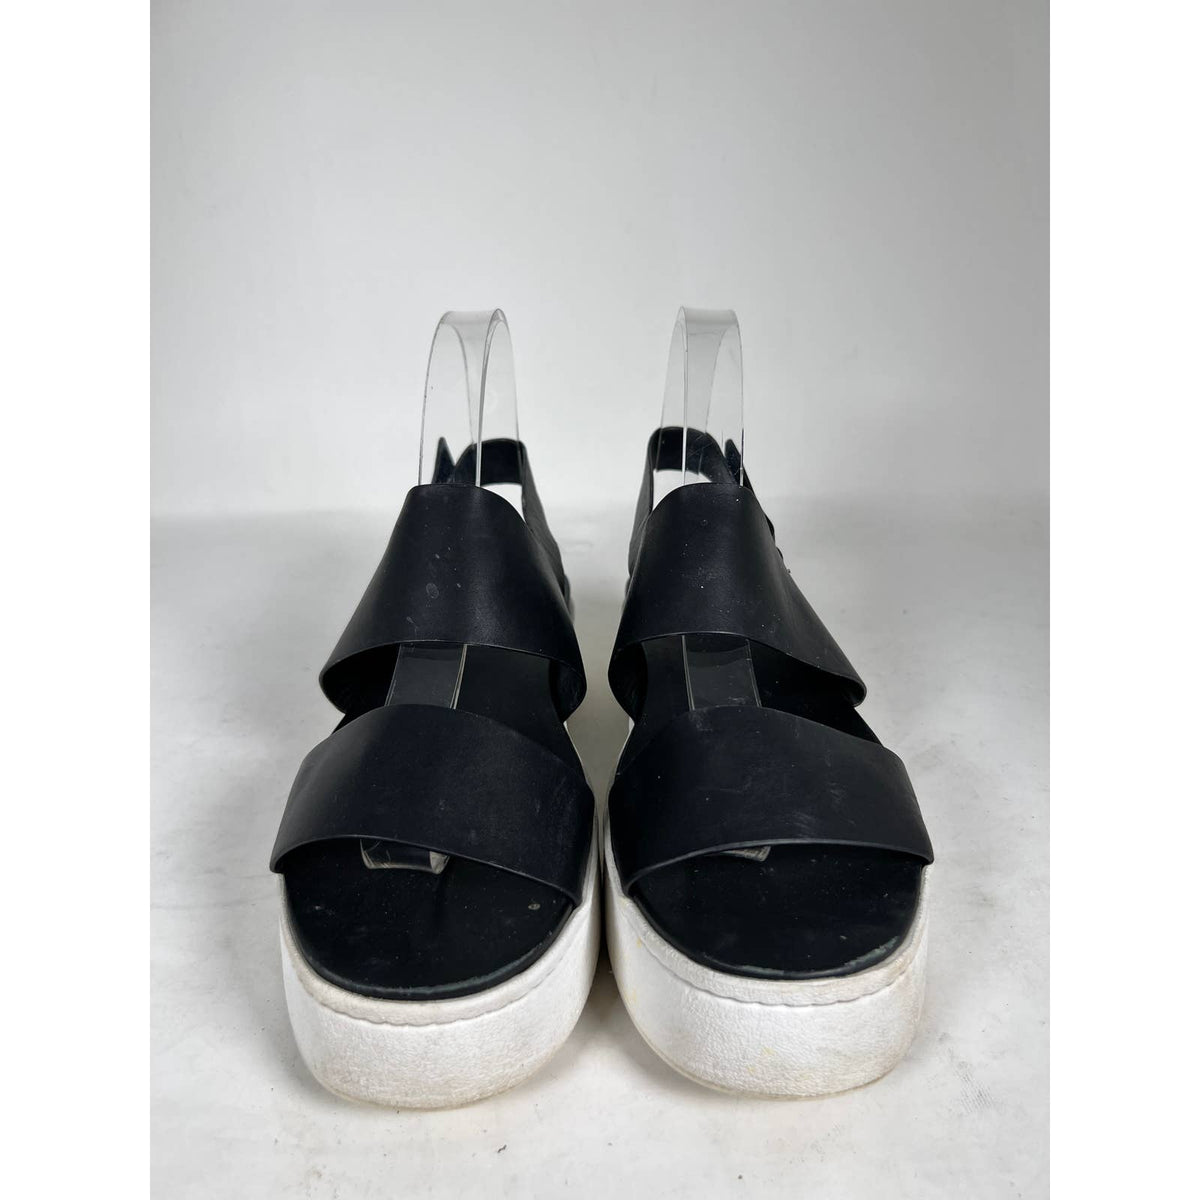 Vince Black Leather Westport Flatform Sandals Sz.9